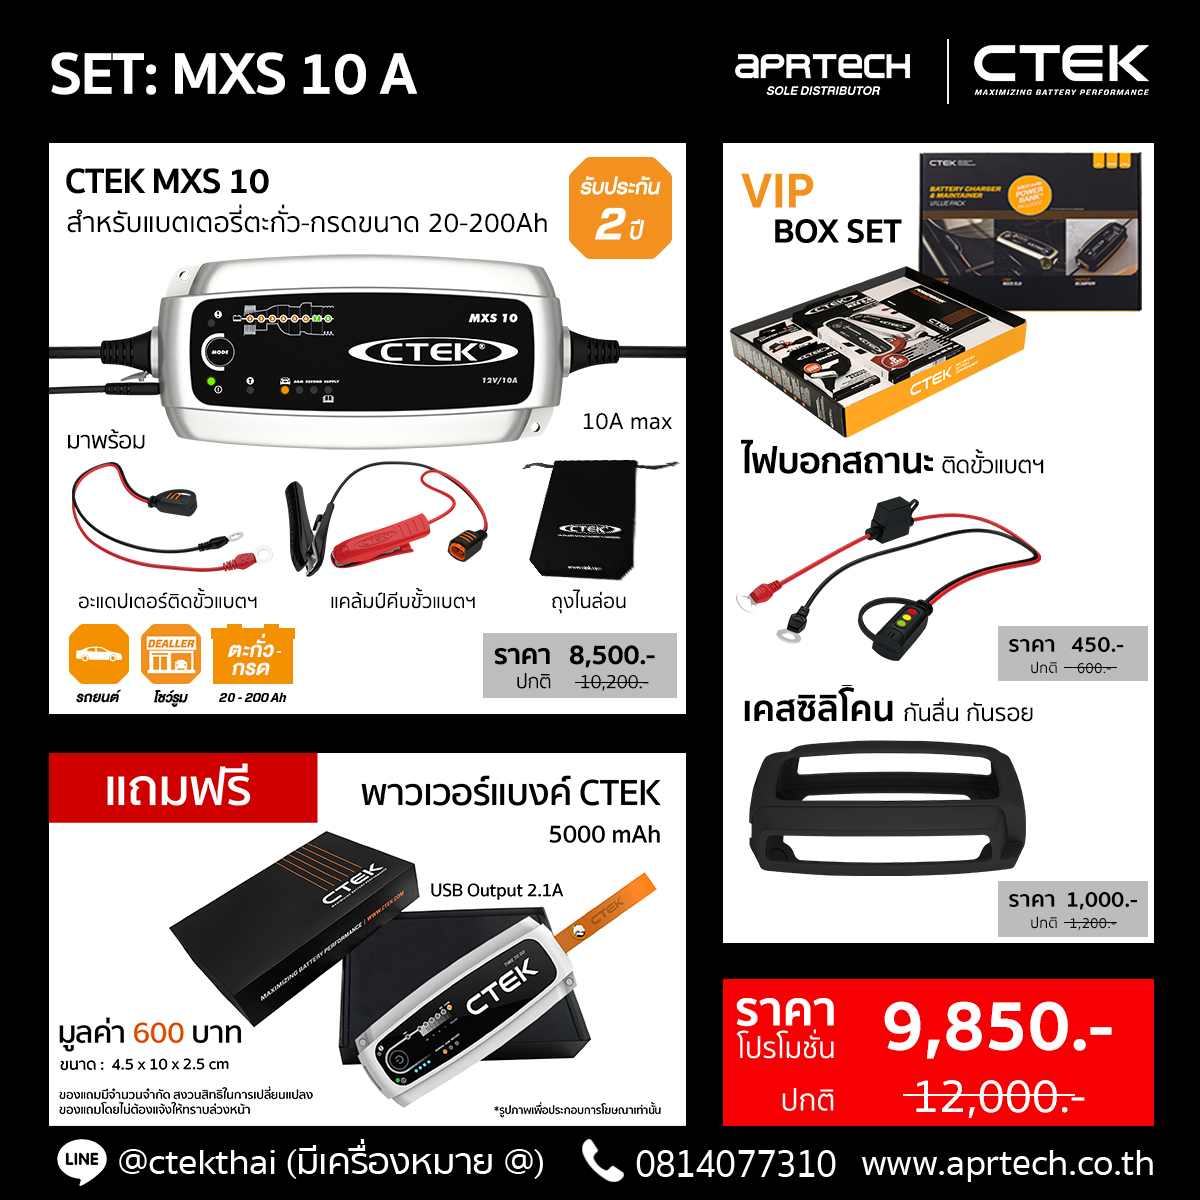 SET MXS 10 A (CTEK MXS 10 + Indicator + Bumper)